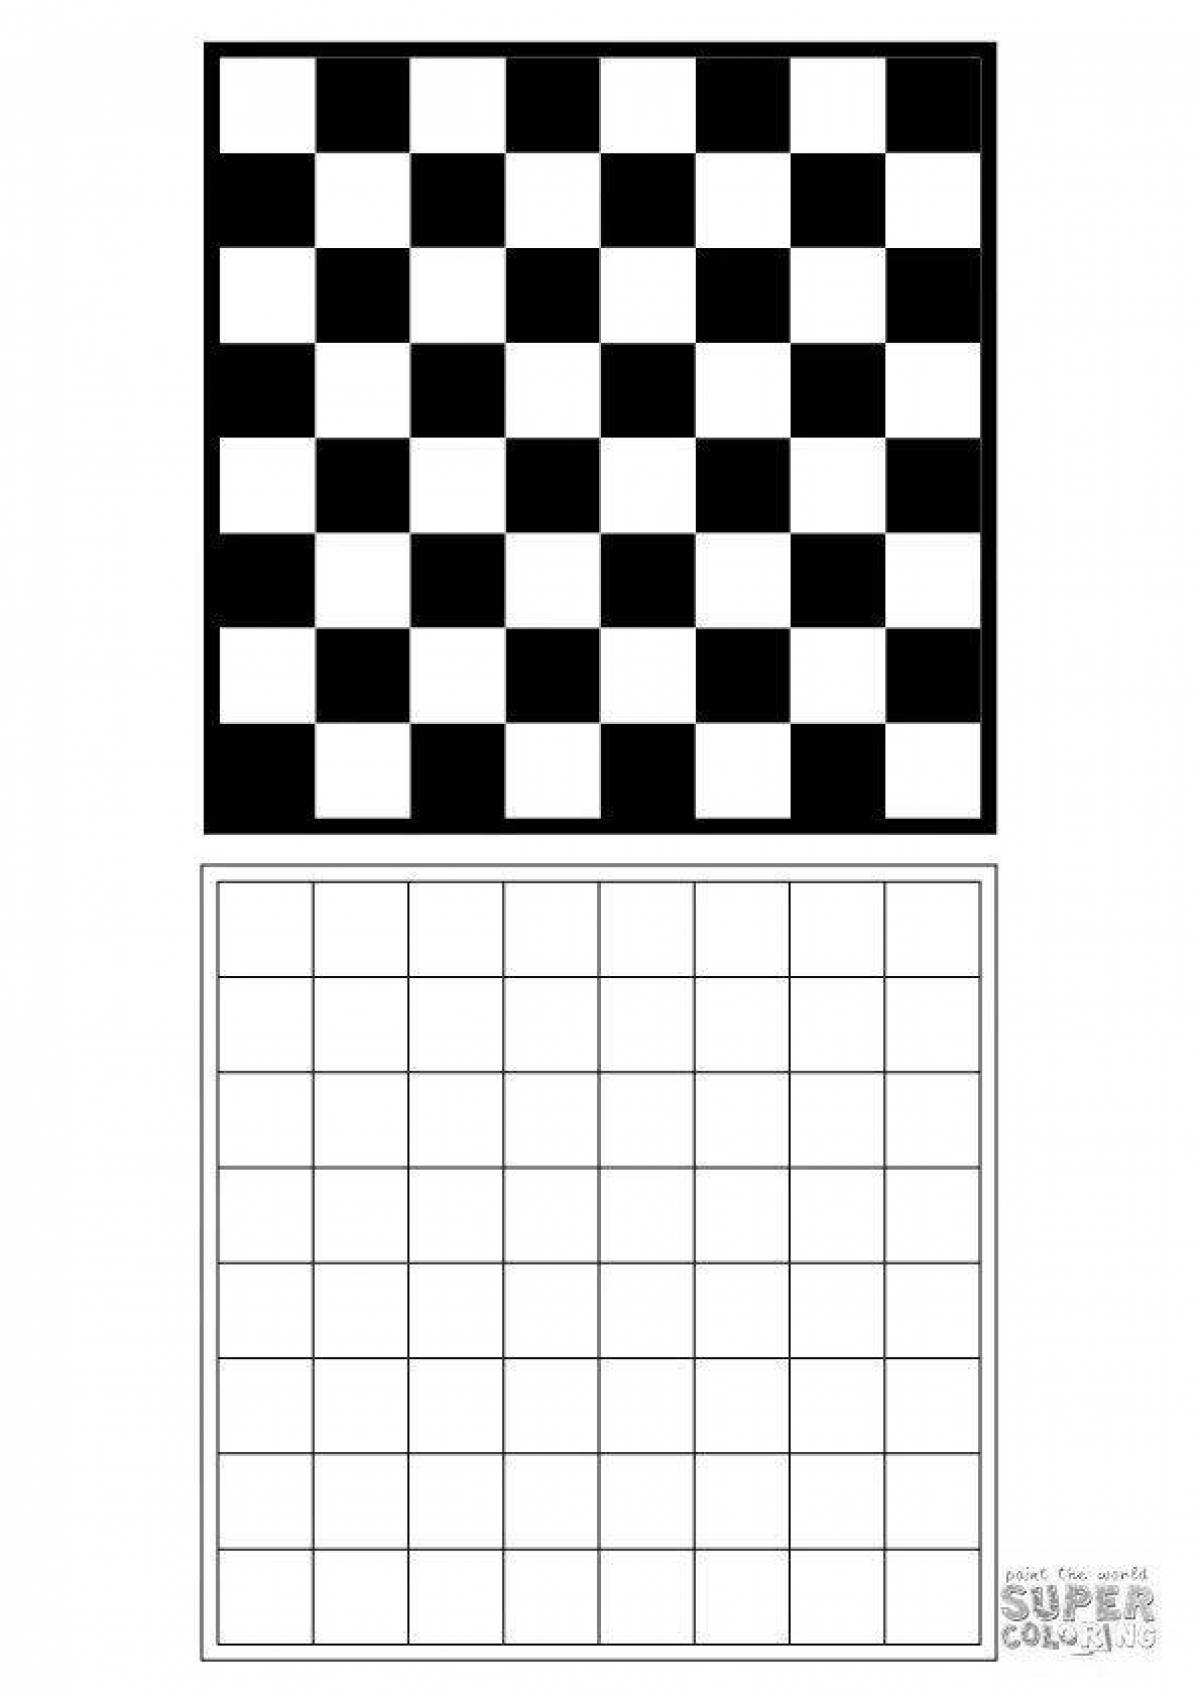 Макет шахматной доски для печати